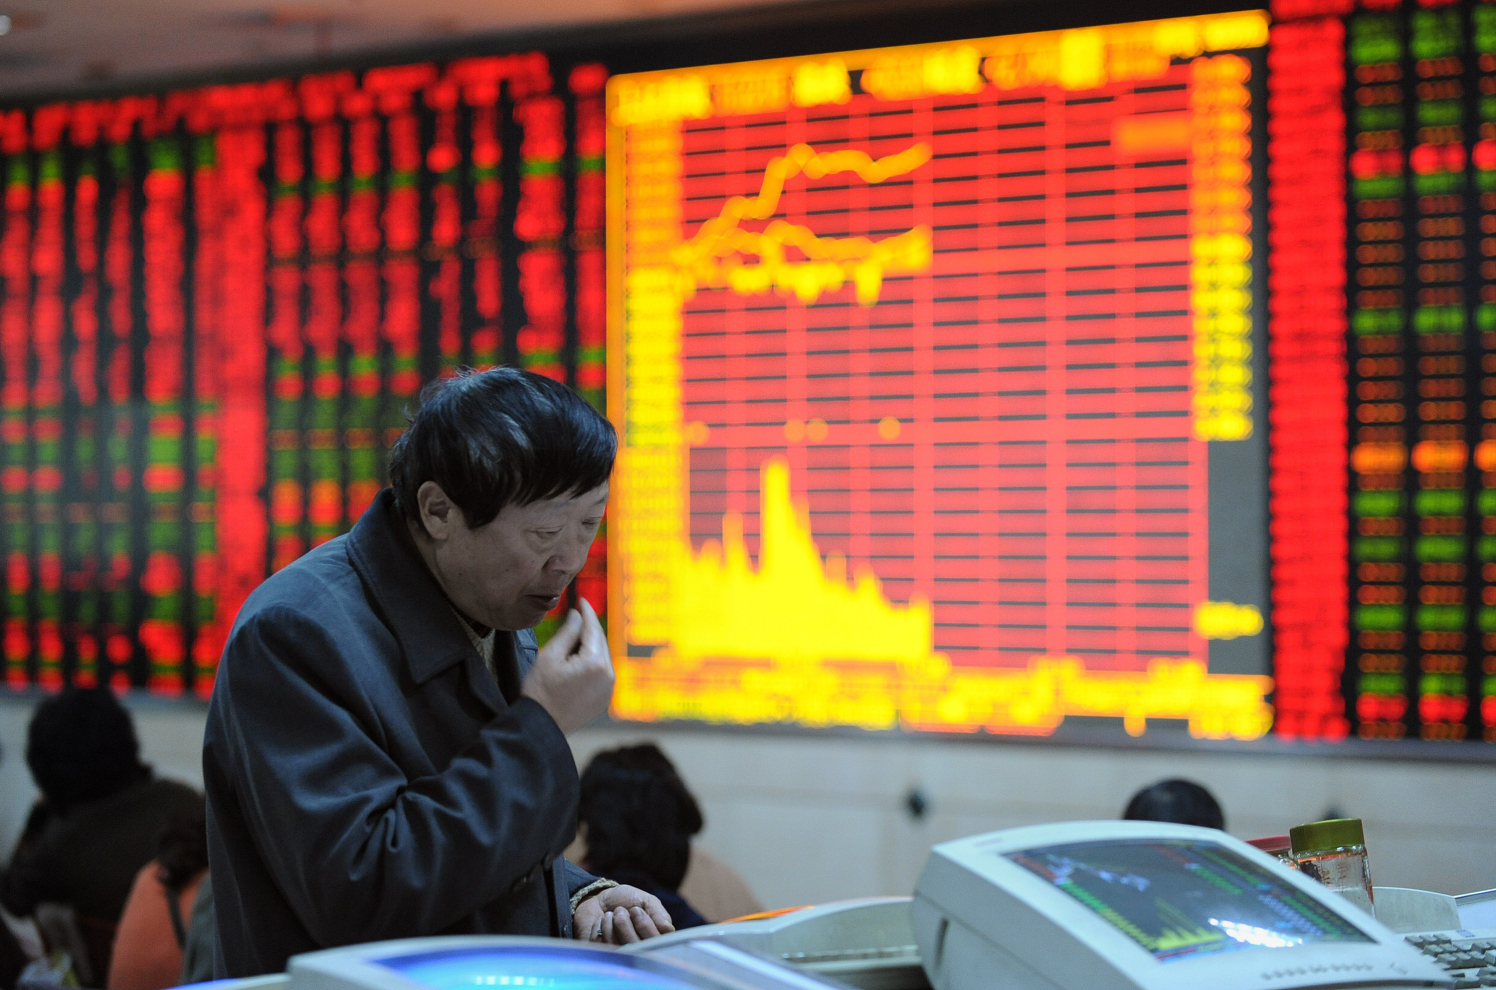 'Thứ 2 đen tối' của chứng khoán Trung Quốc: Cổ phiếu bị 'huỷ diệt hoàn toàn'